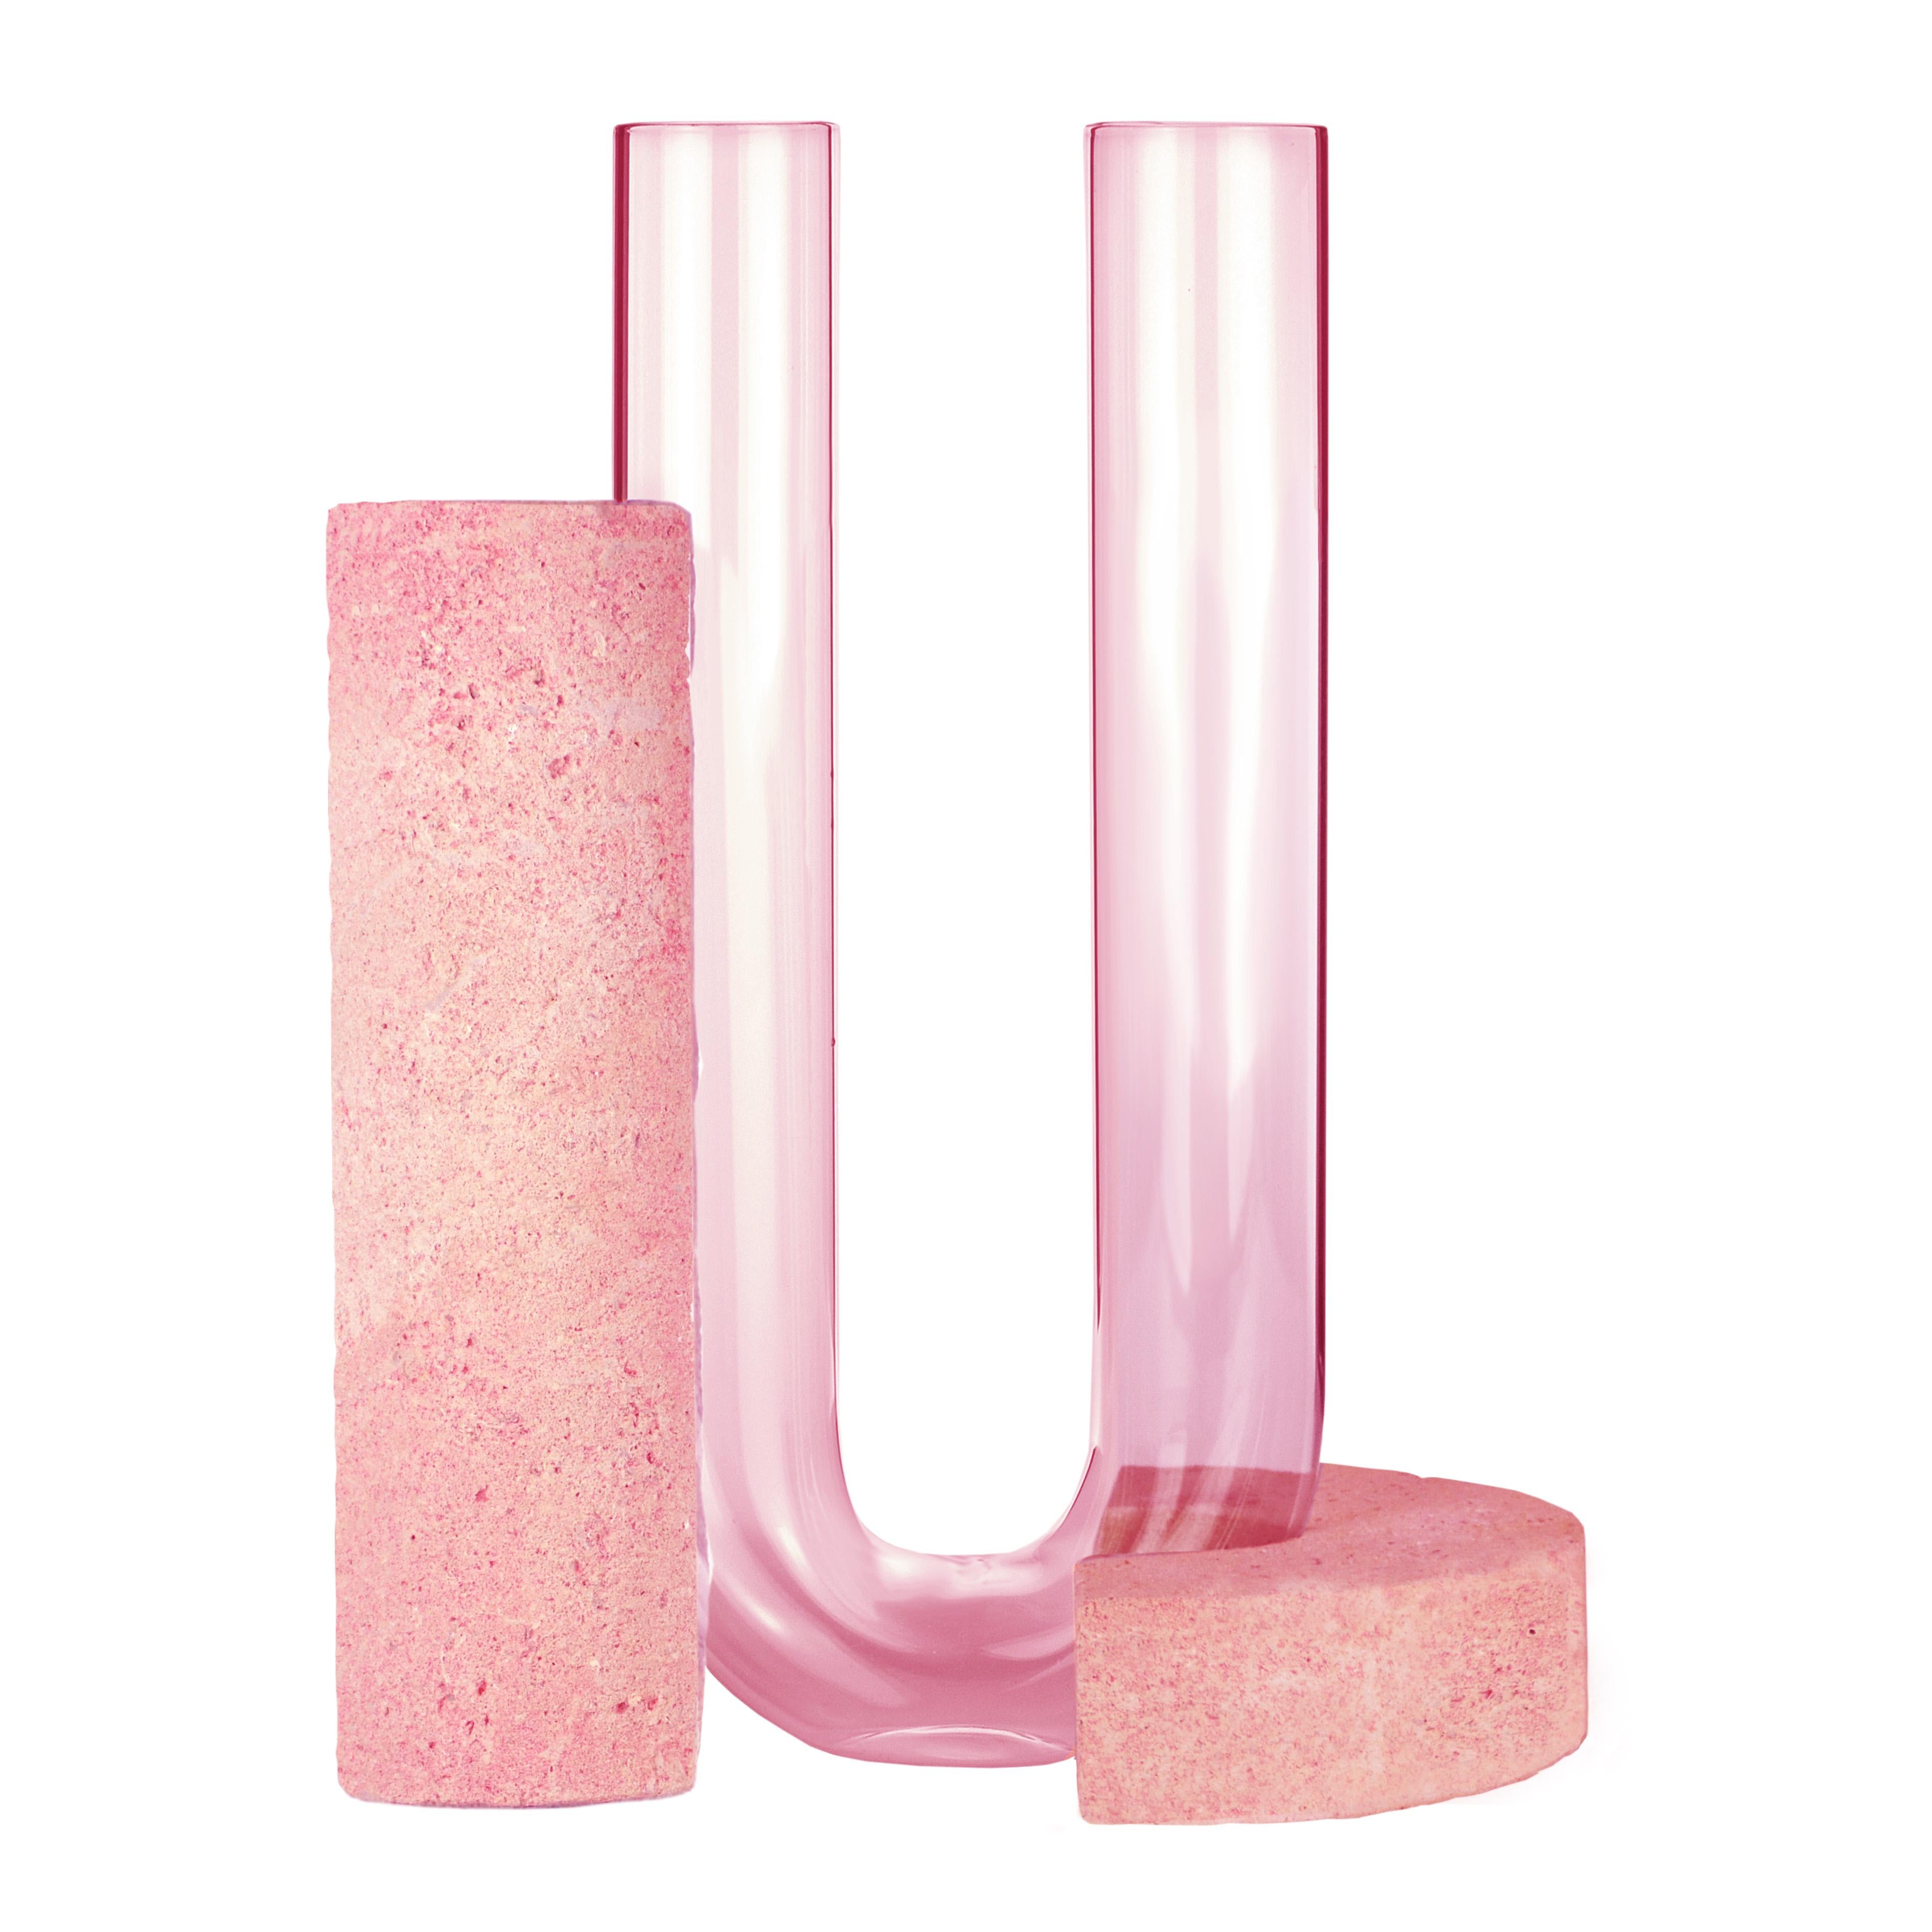 Post-Modern Pink-Pink Cochlea Della Consapevolezza Soils Edition Vase by Coki Barbieri For Sale